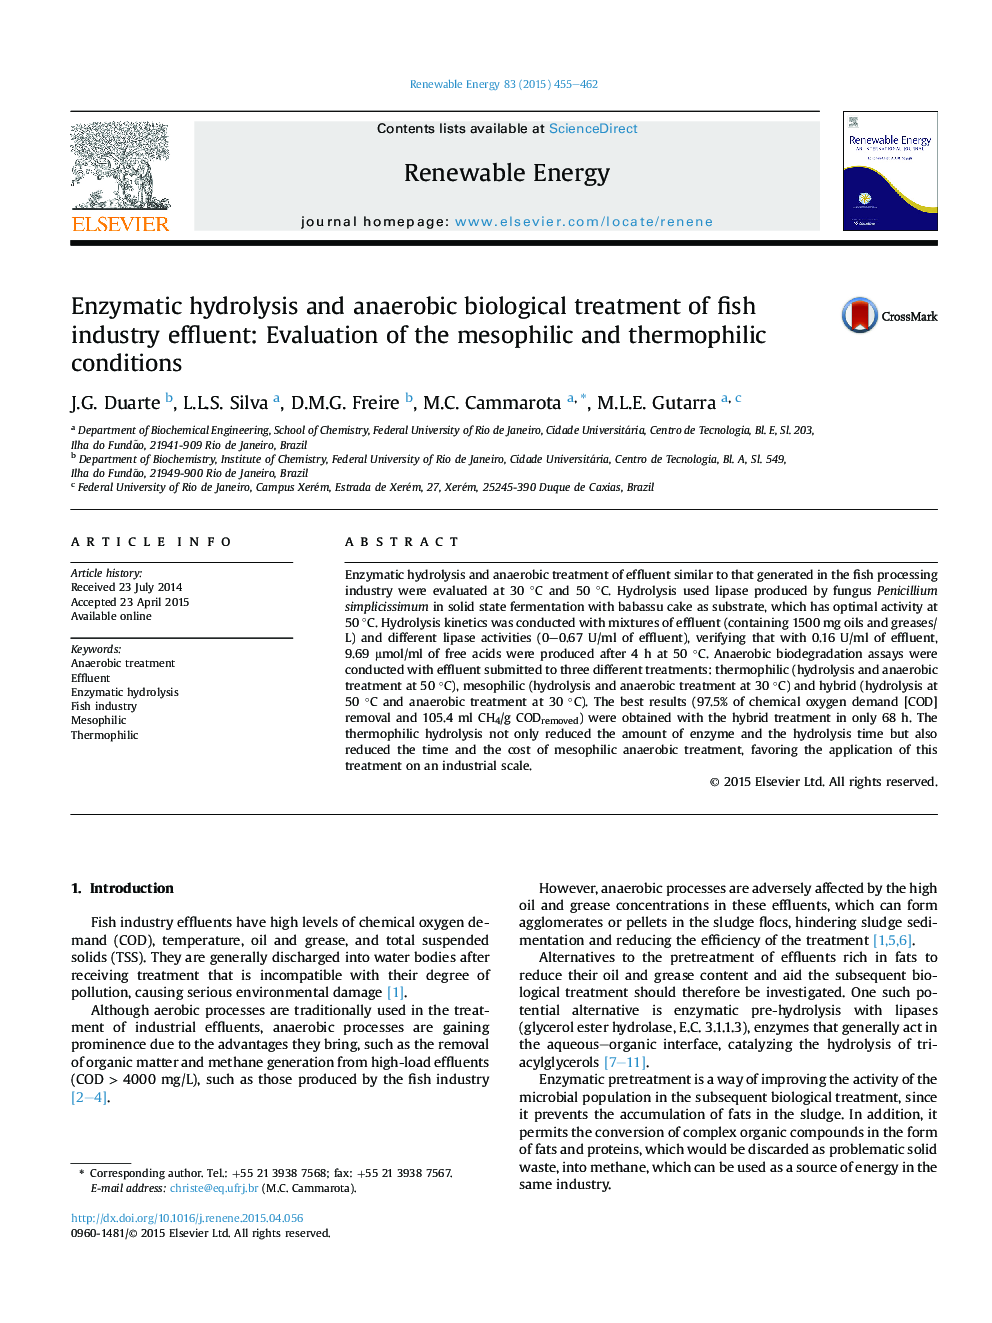 هیدرولیز آنزیمی و درمان بیولوژیکی بی هوازی از پساب صنعت ماهی: ارزیابی شرایط مزوفیل و ترموفیلی 